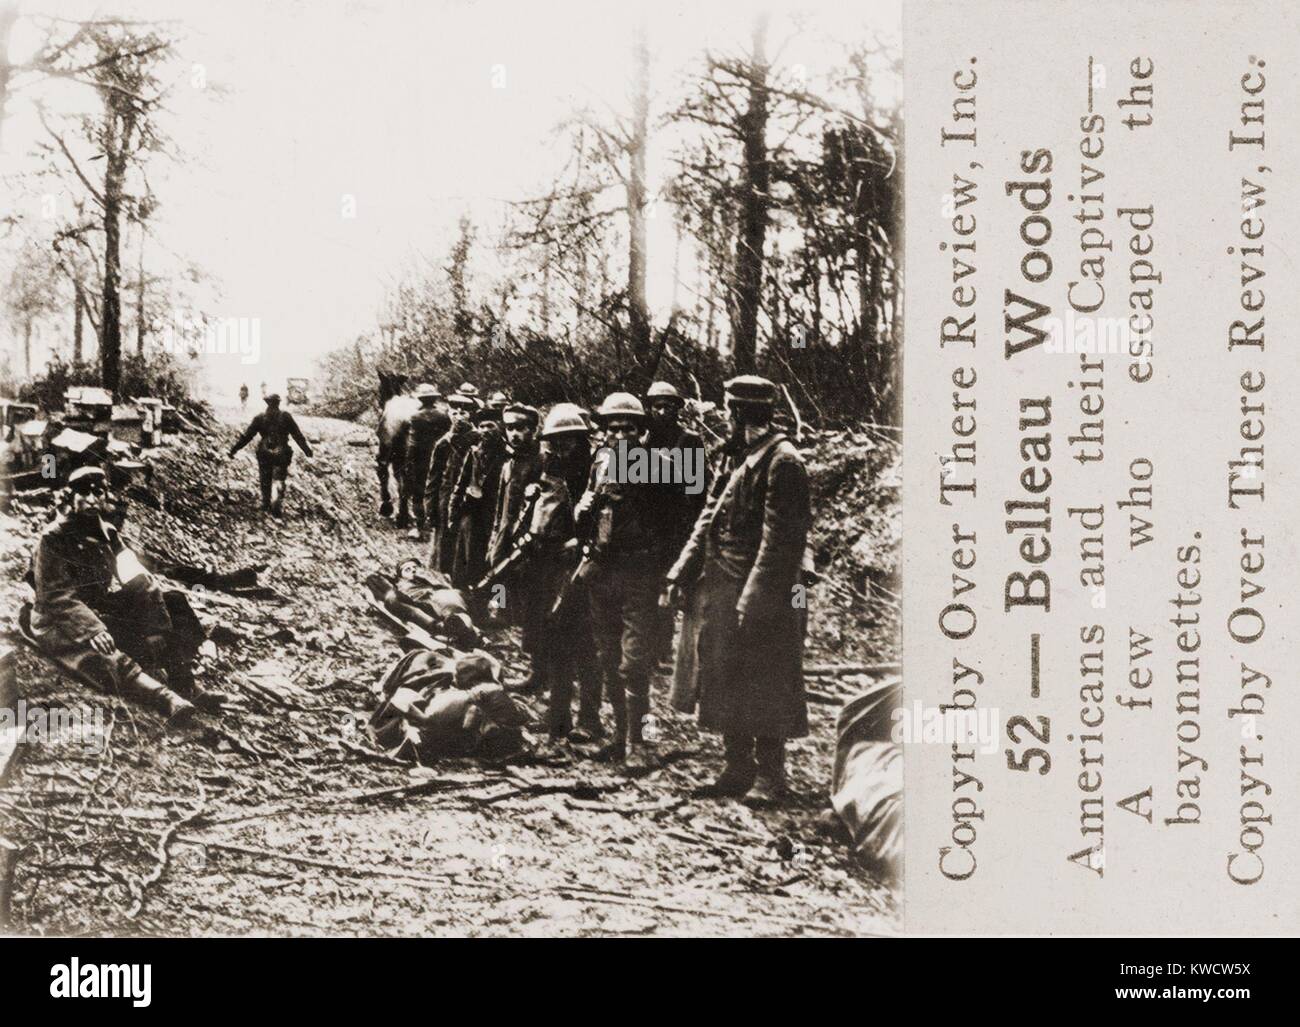 La Seconde Guerre mondiale 1 : Bataille de Belleau Wood. Les Américains avec certains des 1 600 Allemands capturés. 1-26 juin, 1918. (BSLOC 2013 1 181) Banque D'Images